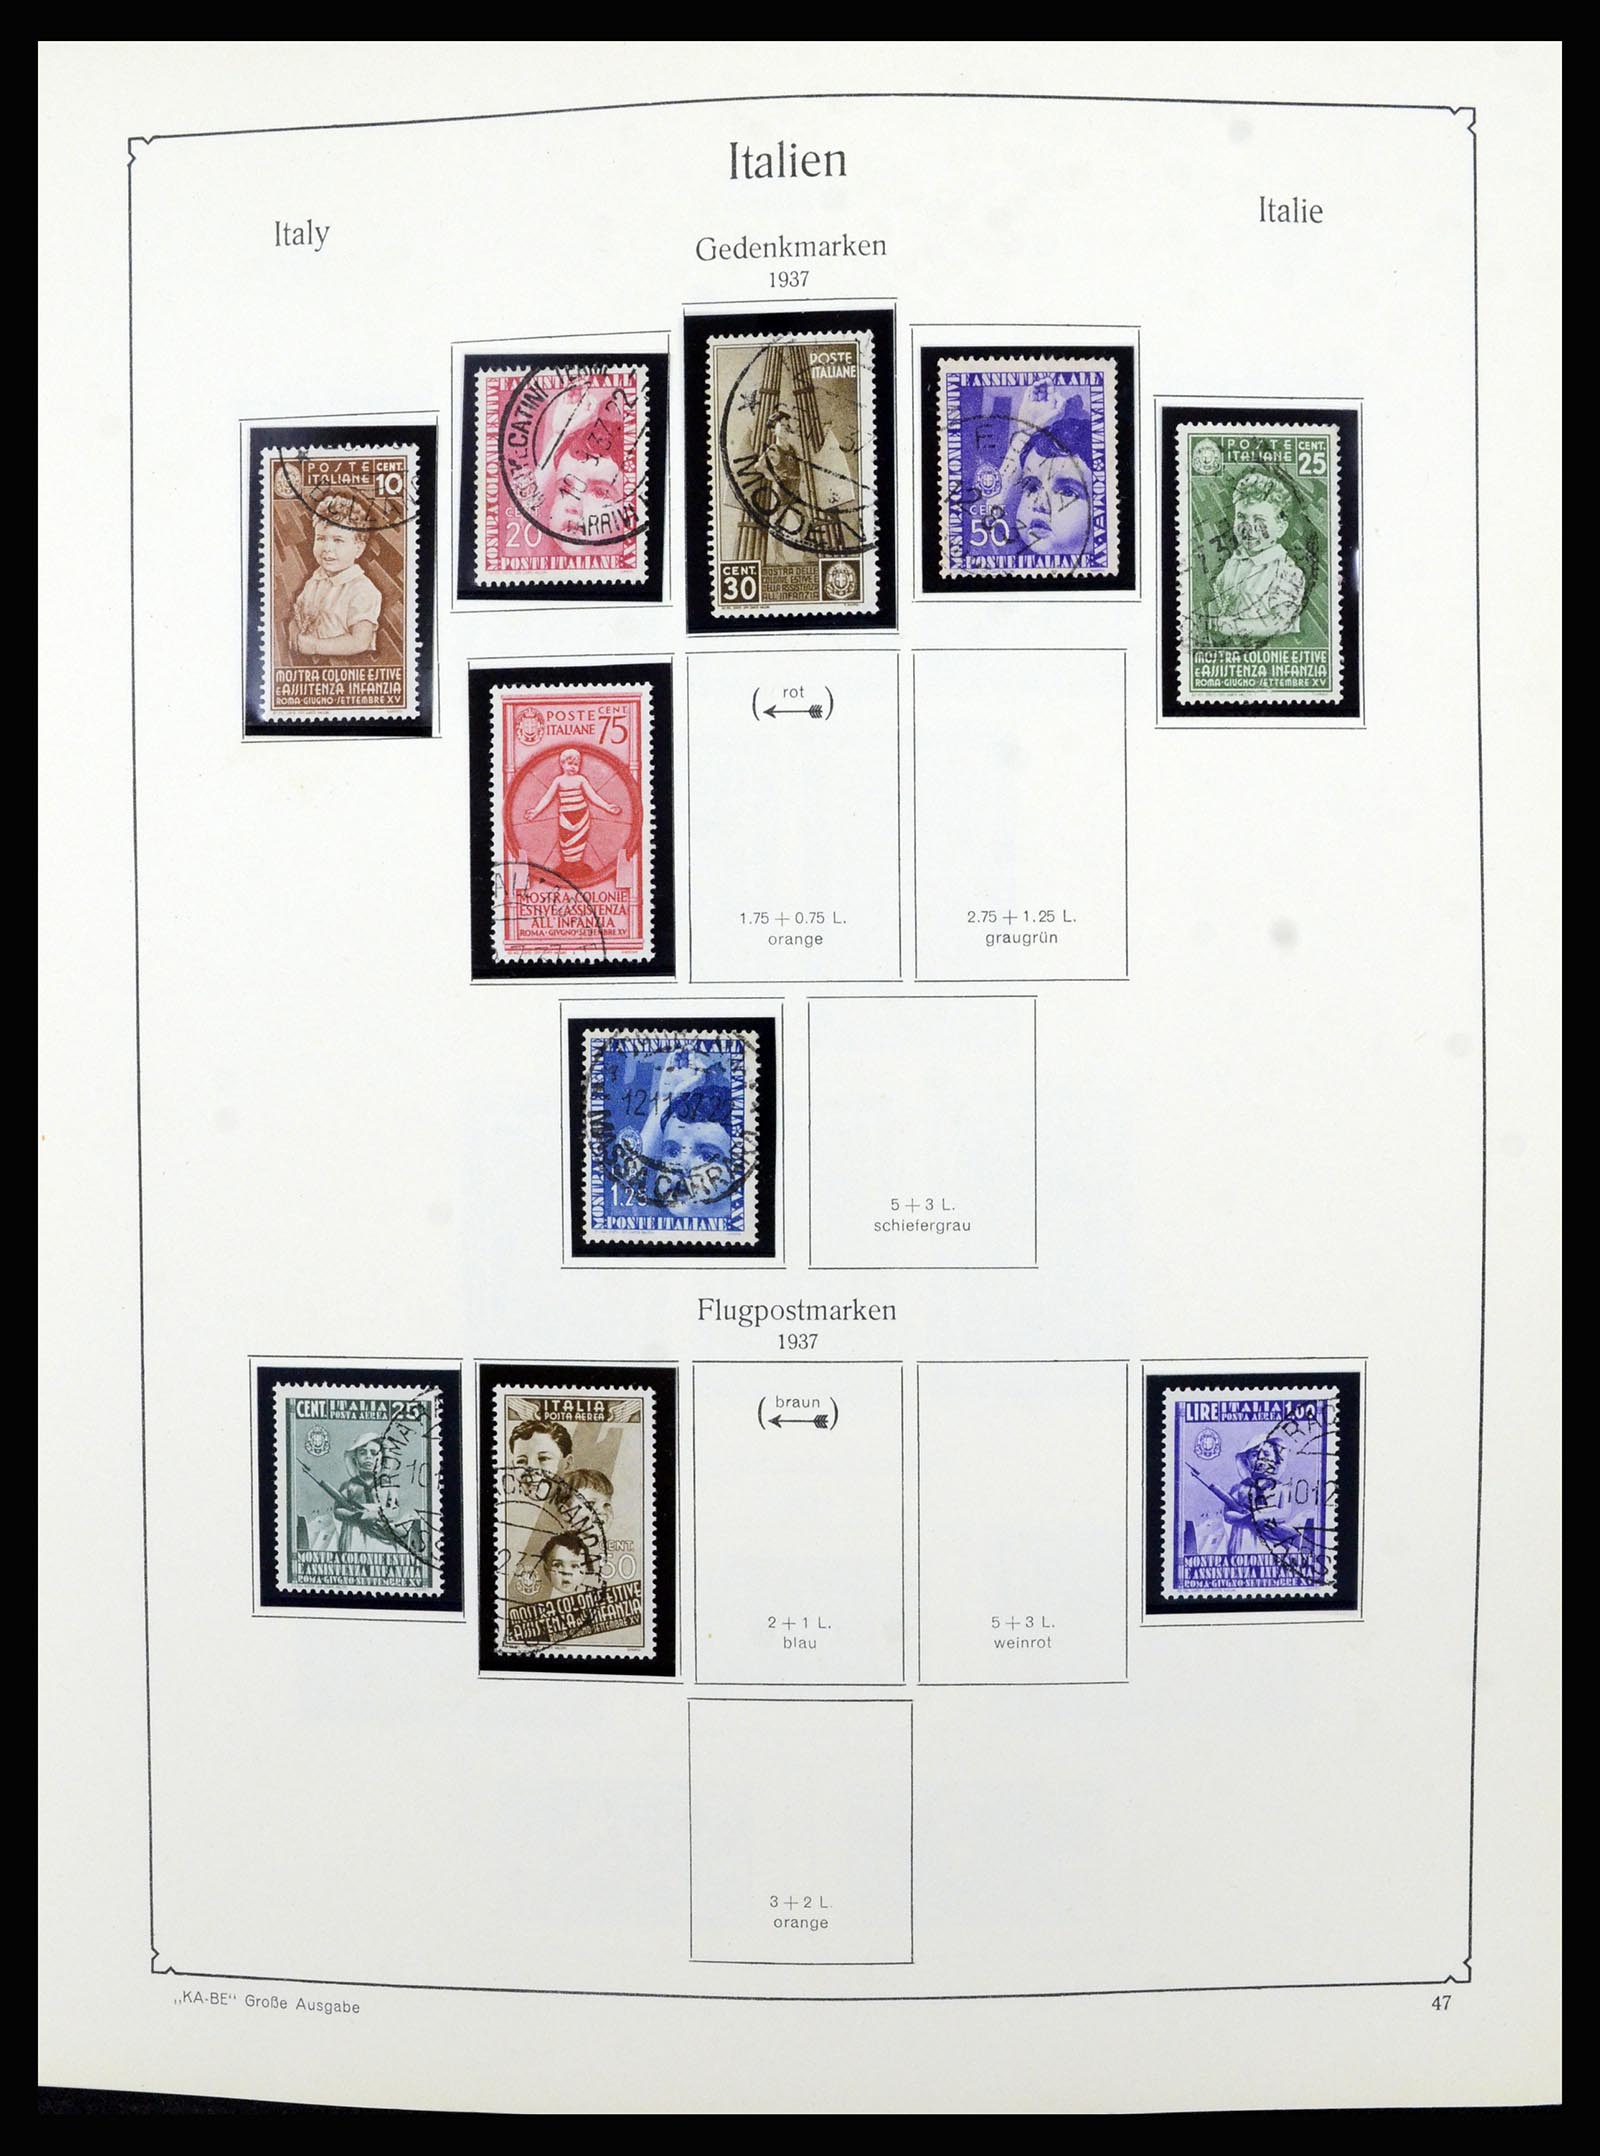 36632 047 - Postzegelverzameling 36632 Italy 1861-1977.